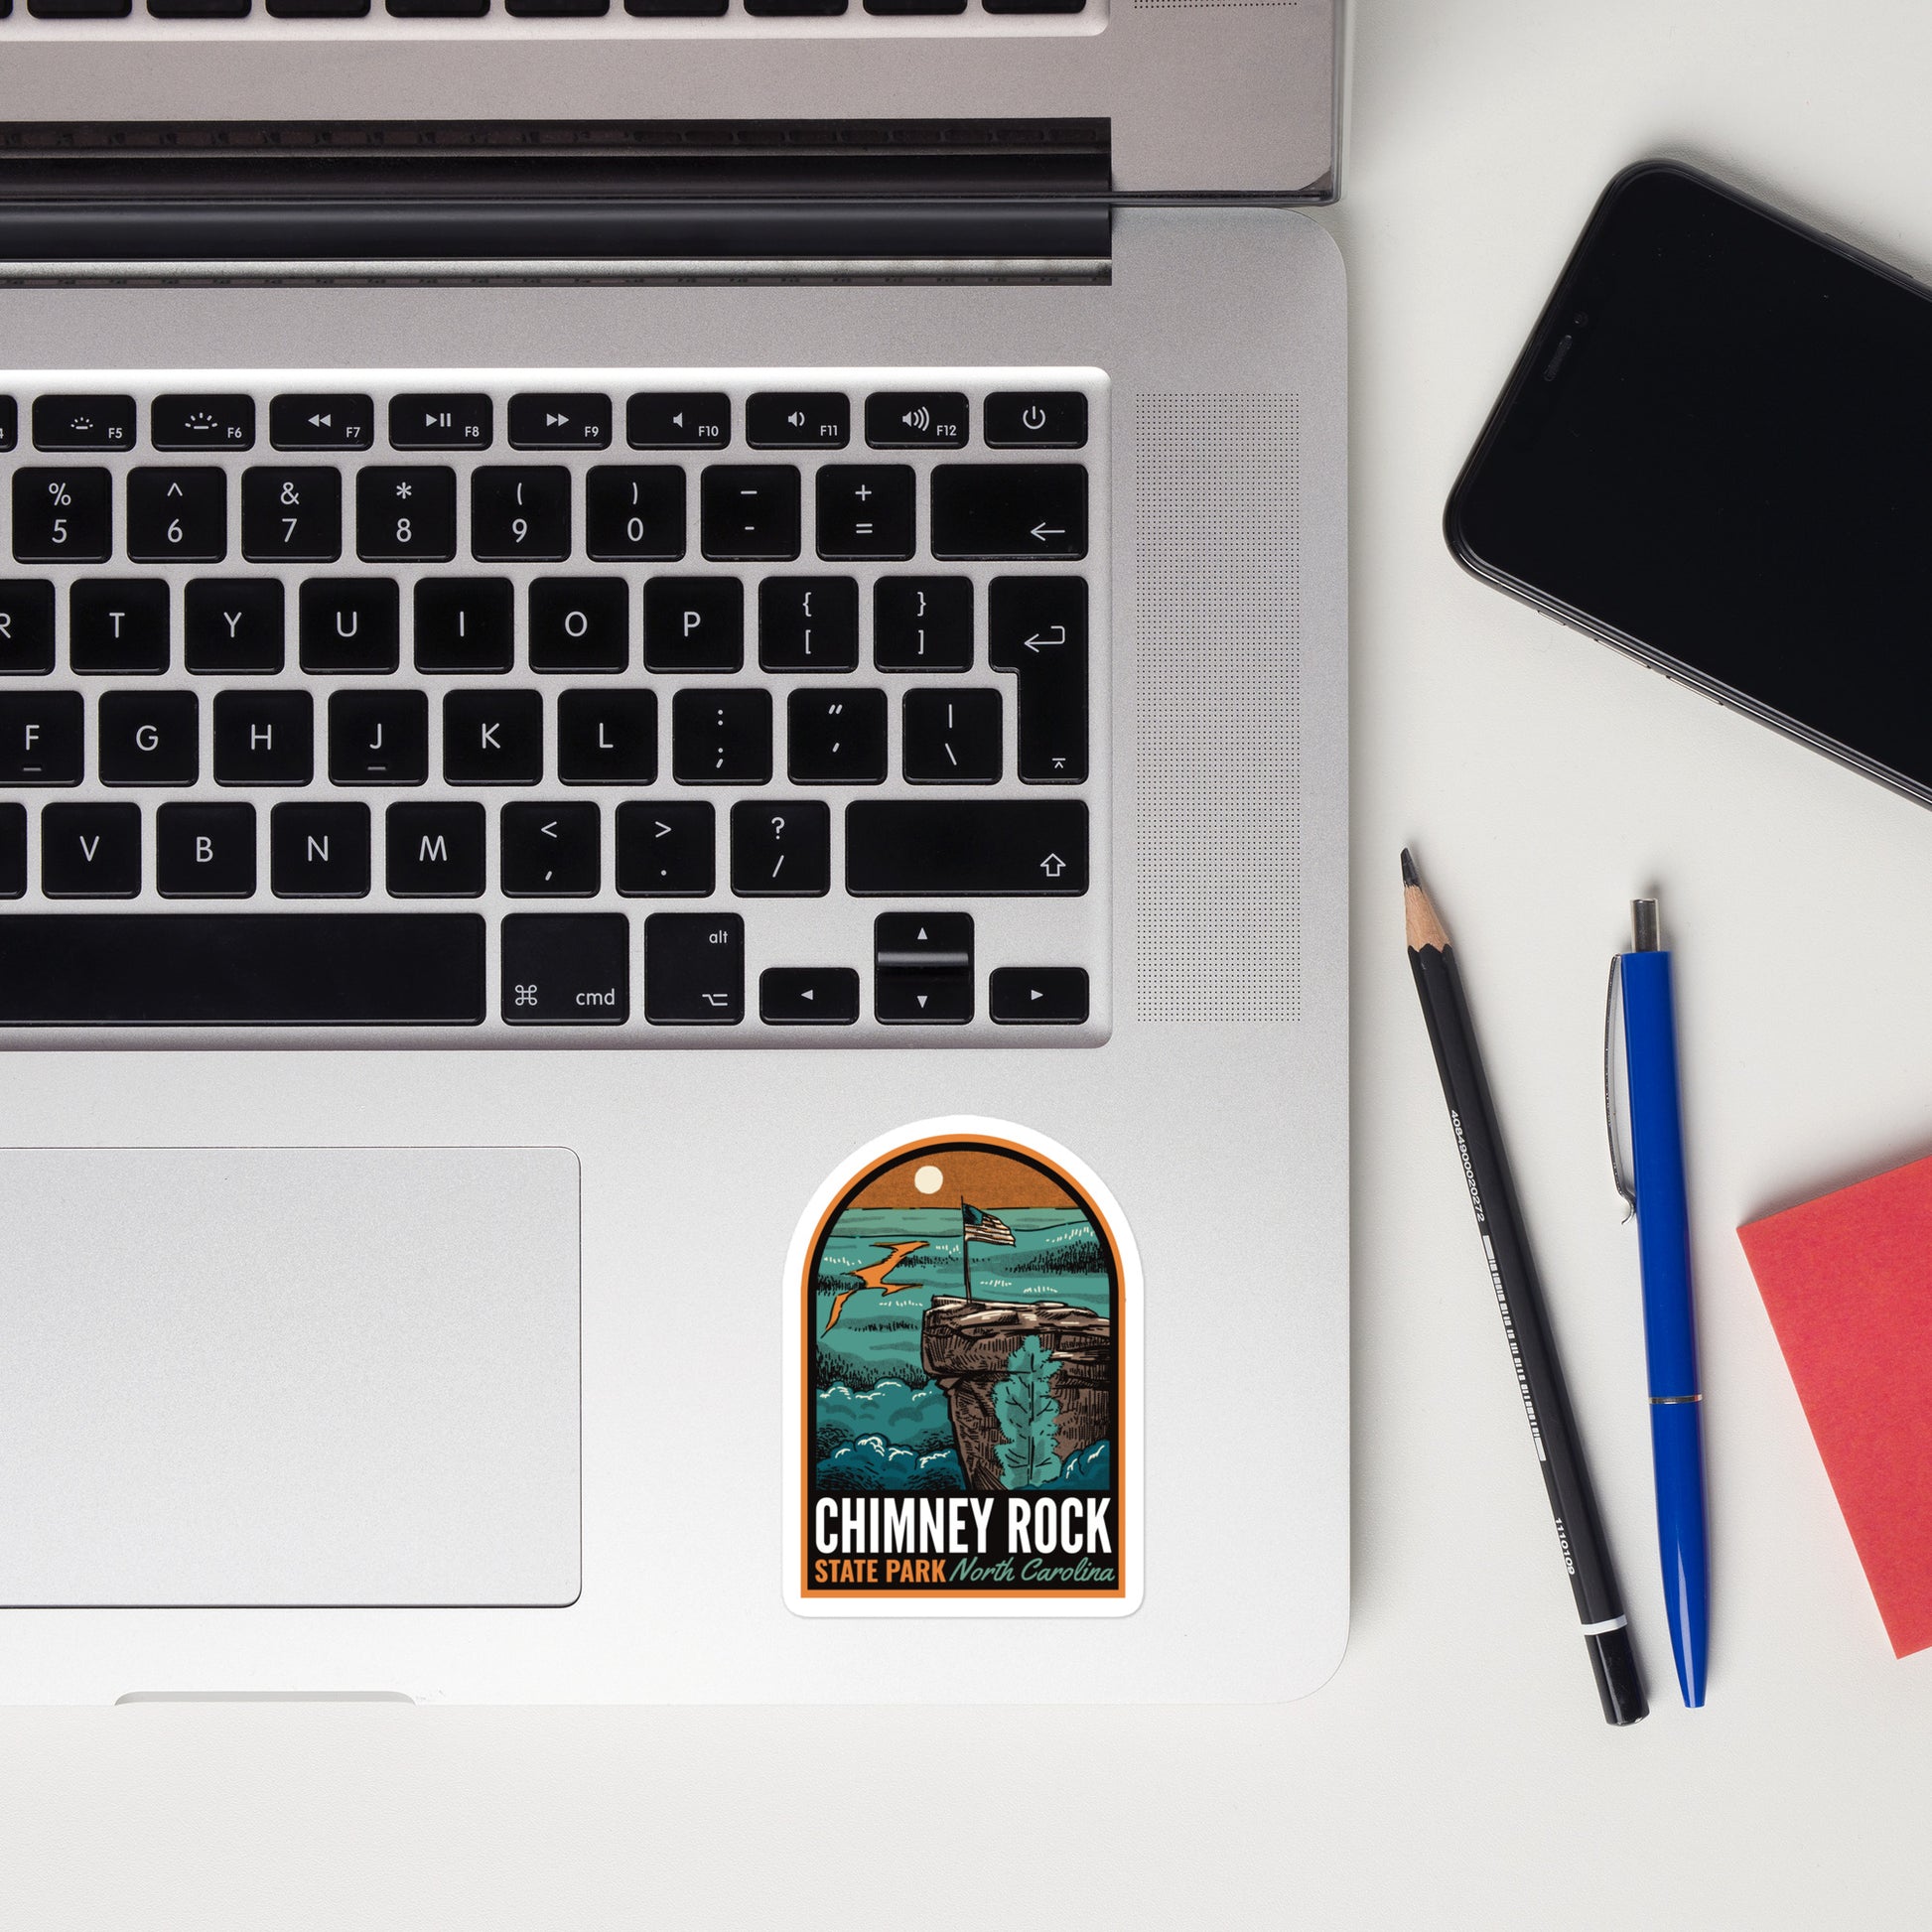 A sticker of Chimney Rock State Park on a laptop